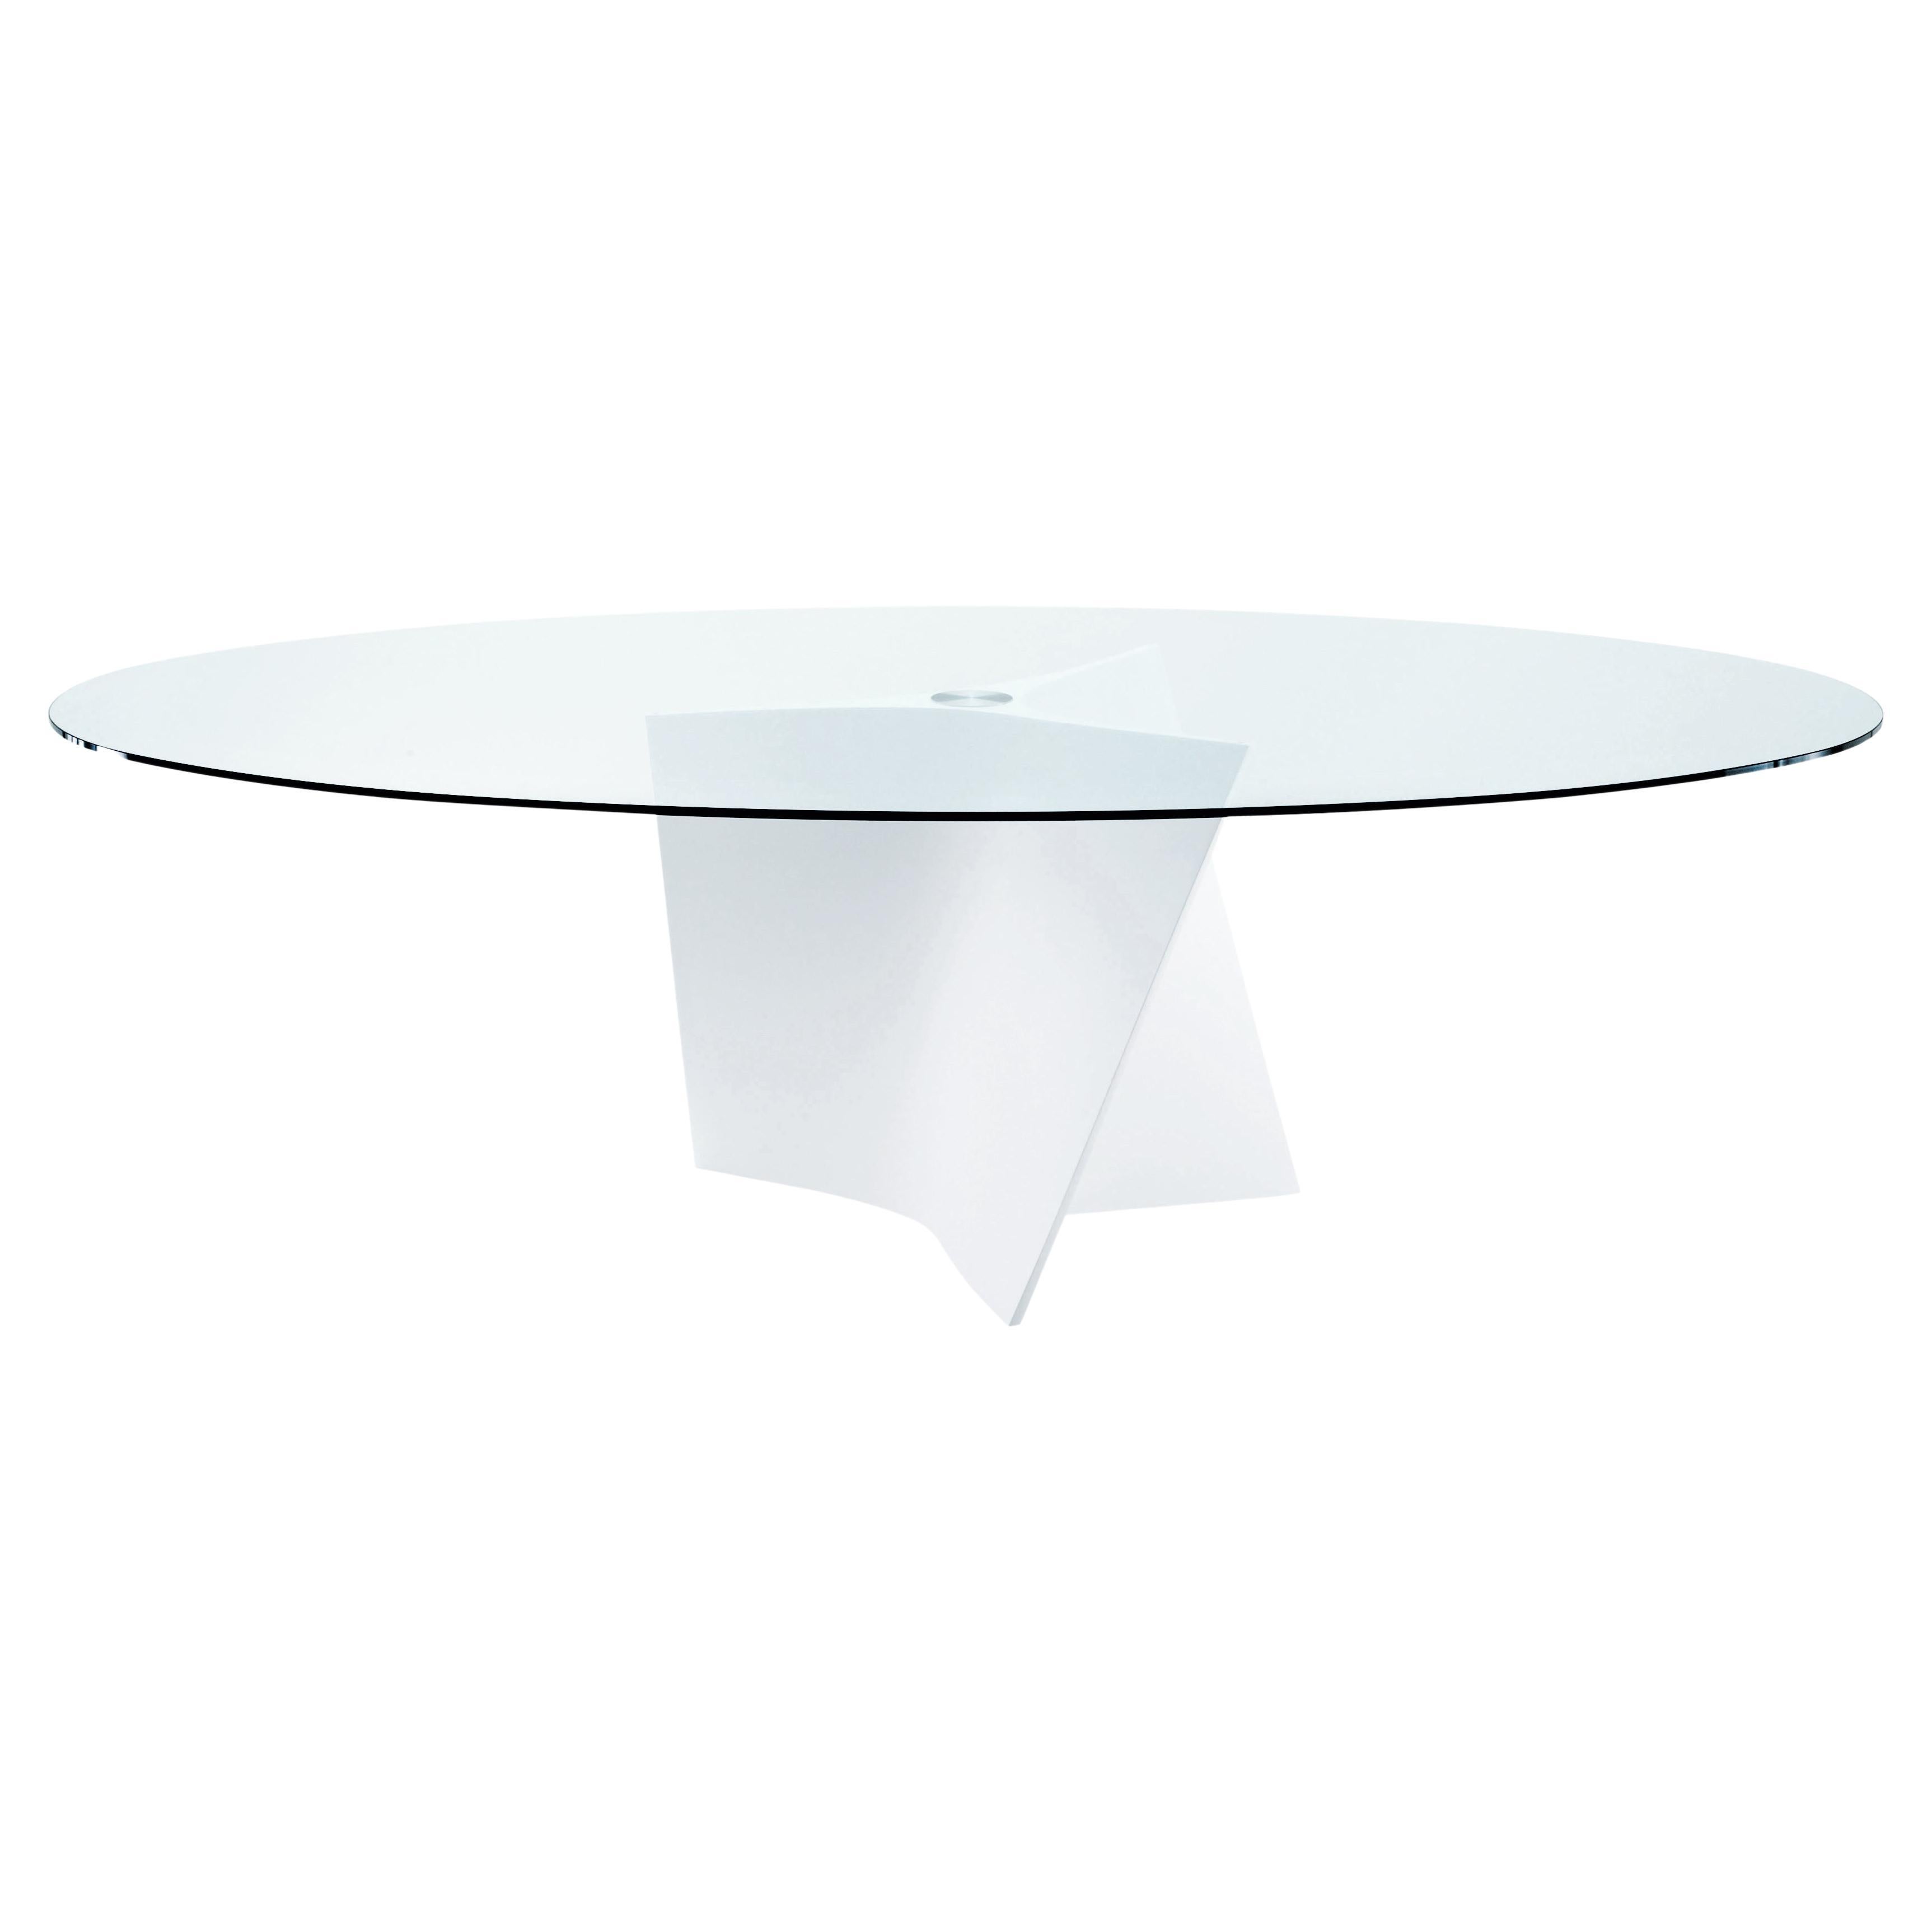 Großer Elica-Tisch von Zanotta mit Klarglasplatte und weißem Rahmen von Prospero Rasulo